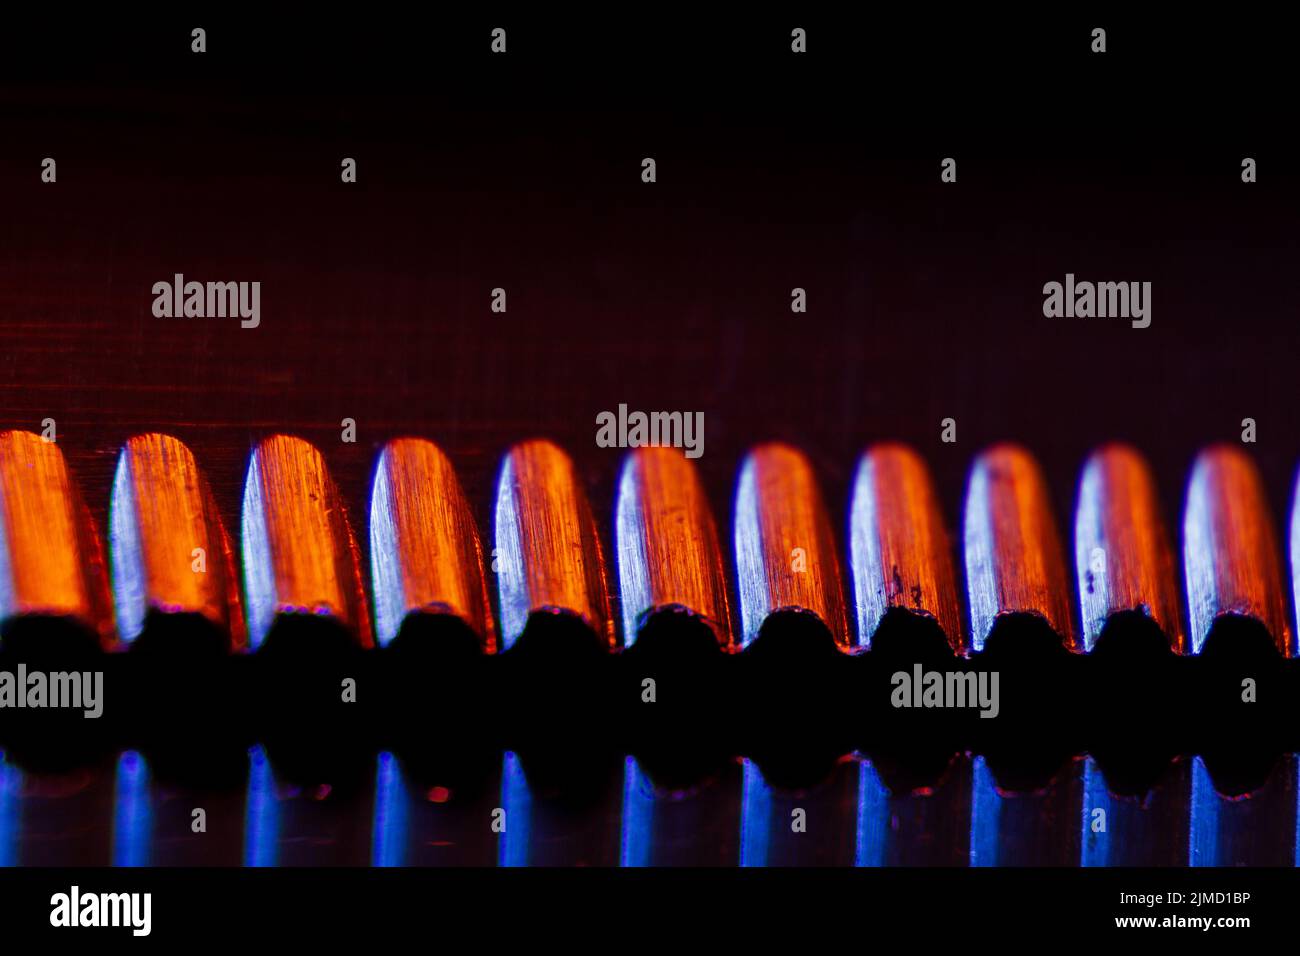 Bordo di un coltello seghettato illuminato e il loro macro-shot riflesso adatto come sfondo. Foto Stock